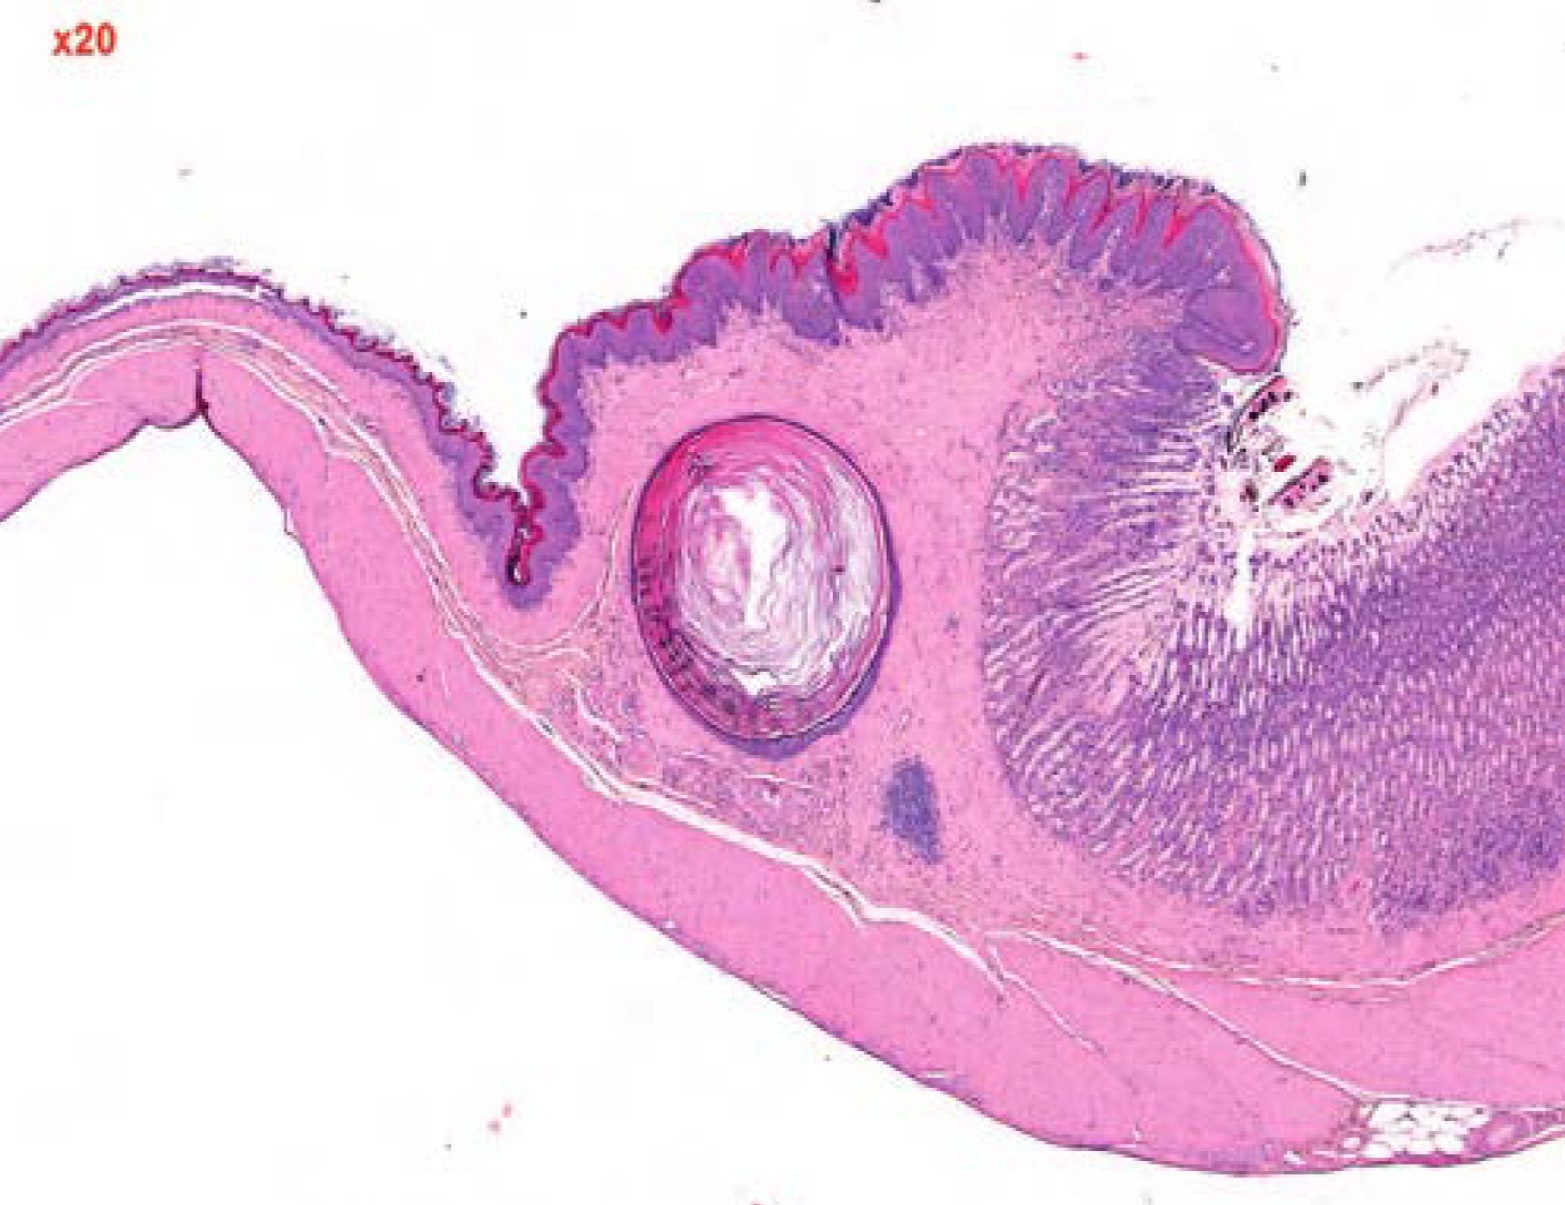  <strong>Рис. 1.</strong> Плоскоклеточная киста в подслизистом слое безжелезистой части желудка у крысы, ×20 (9)